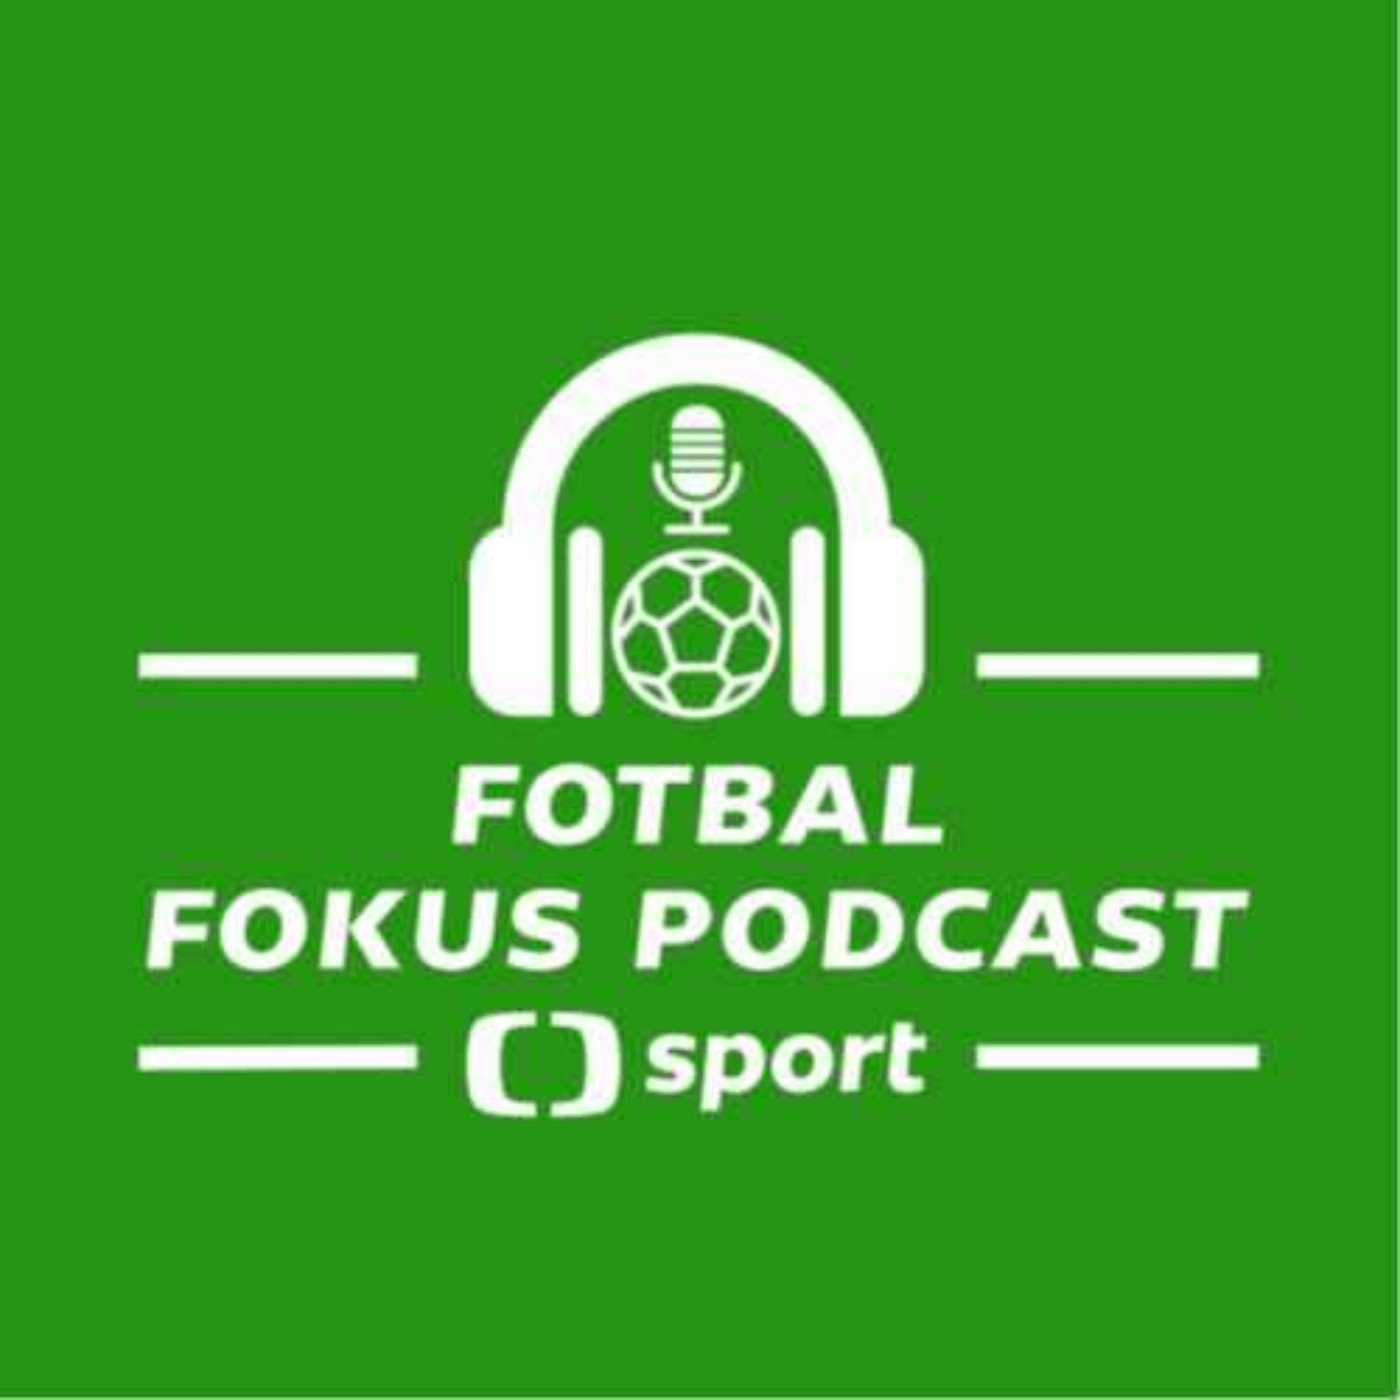 Fotbal fokus podcast: České loučení, Bořil v sestavě, favorité a sešívaný Krmenčík